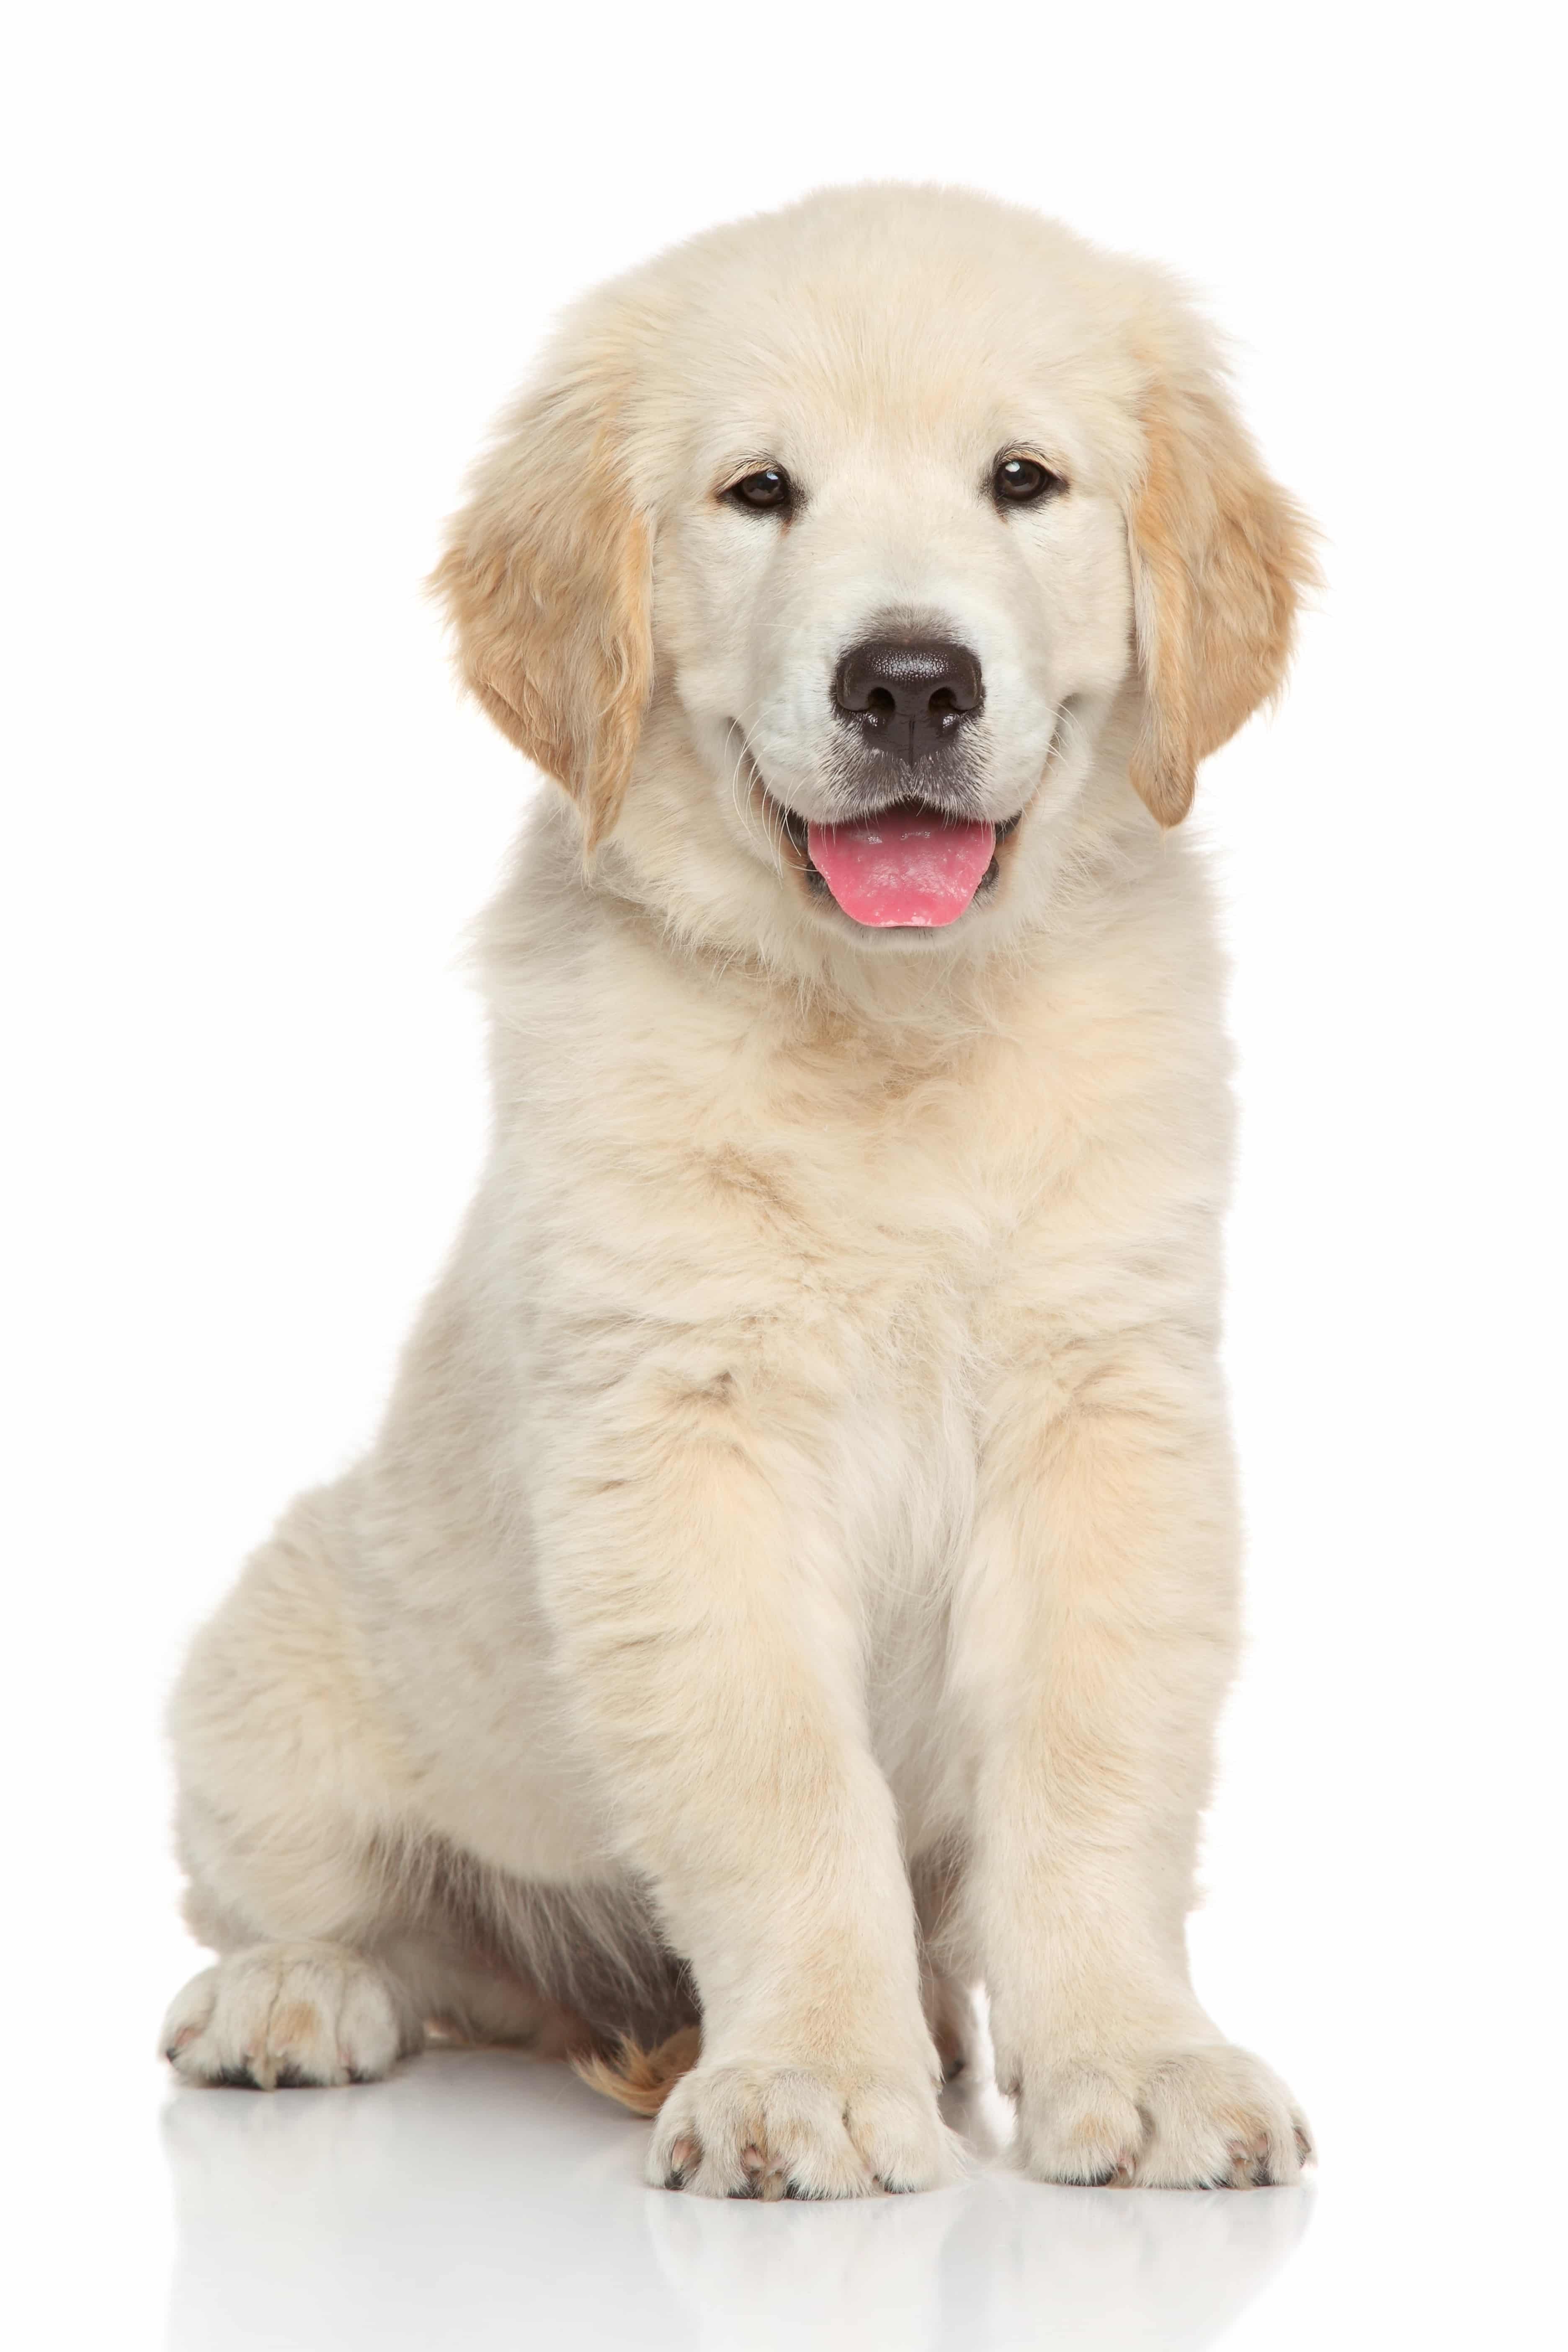 Golden retriever puppy. Portrait on white background